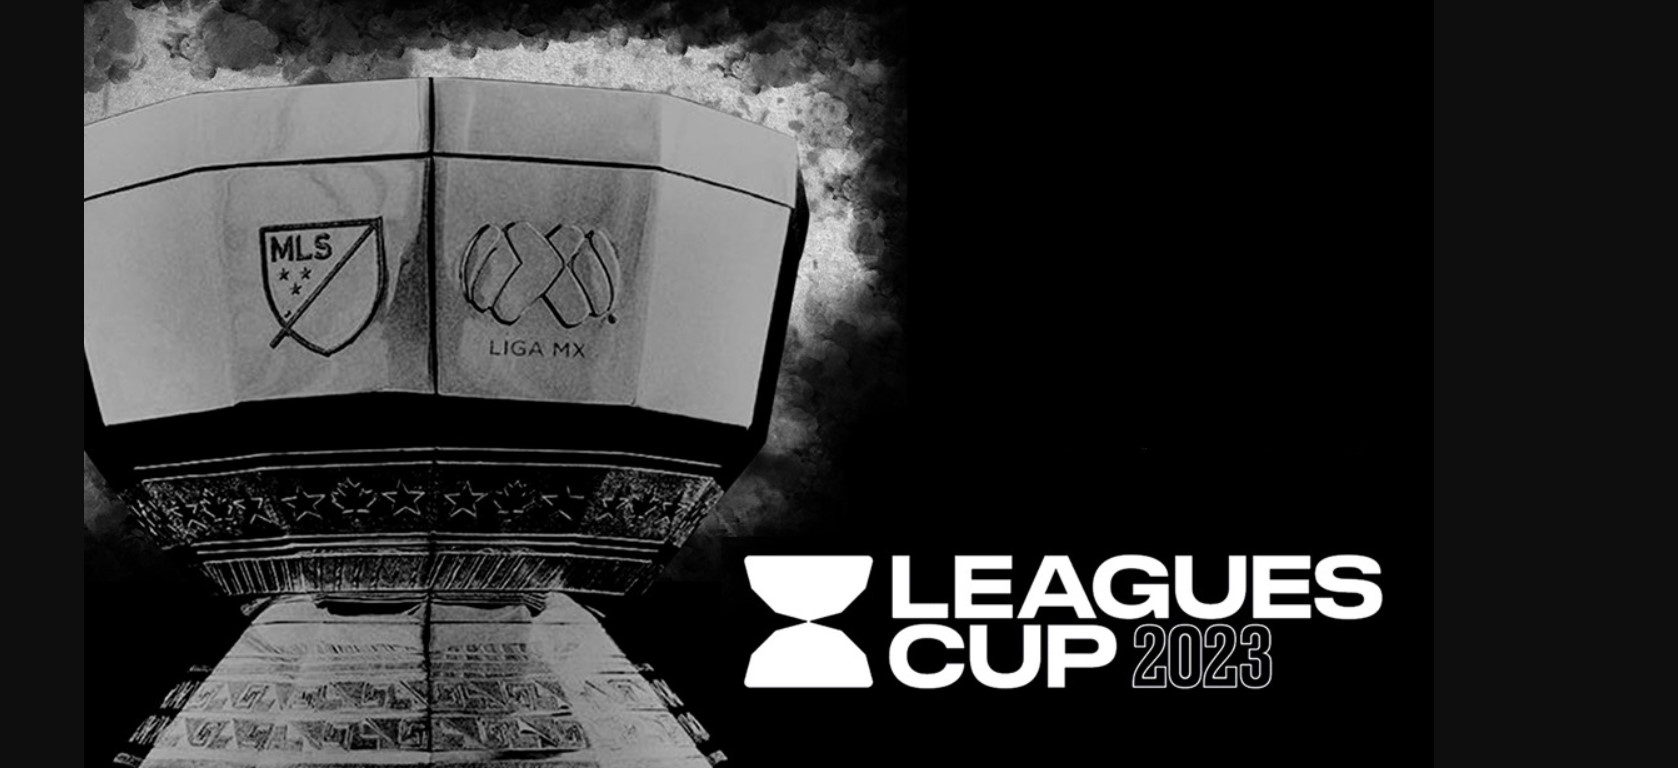 La Leagues Cup unirá las Ligas de México y Estados Unidos a partir de junio de 2023. (Foto Prensa Libre: Liga Mx/Twitter)